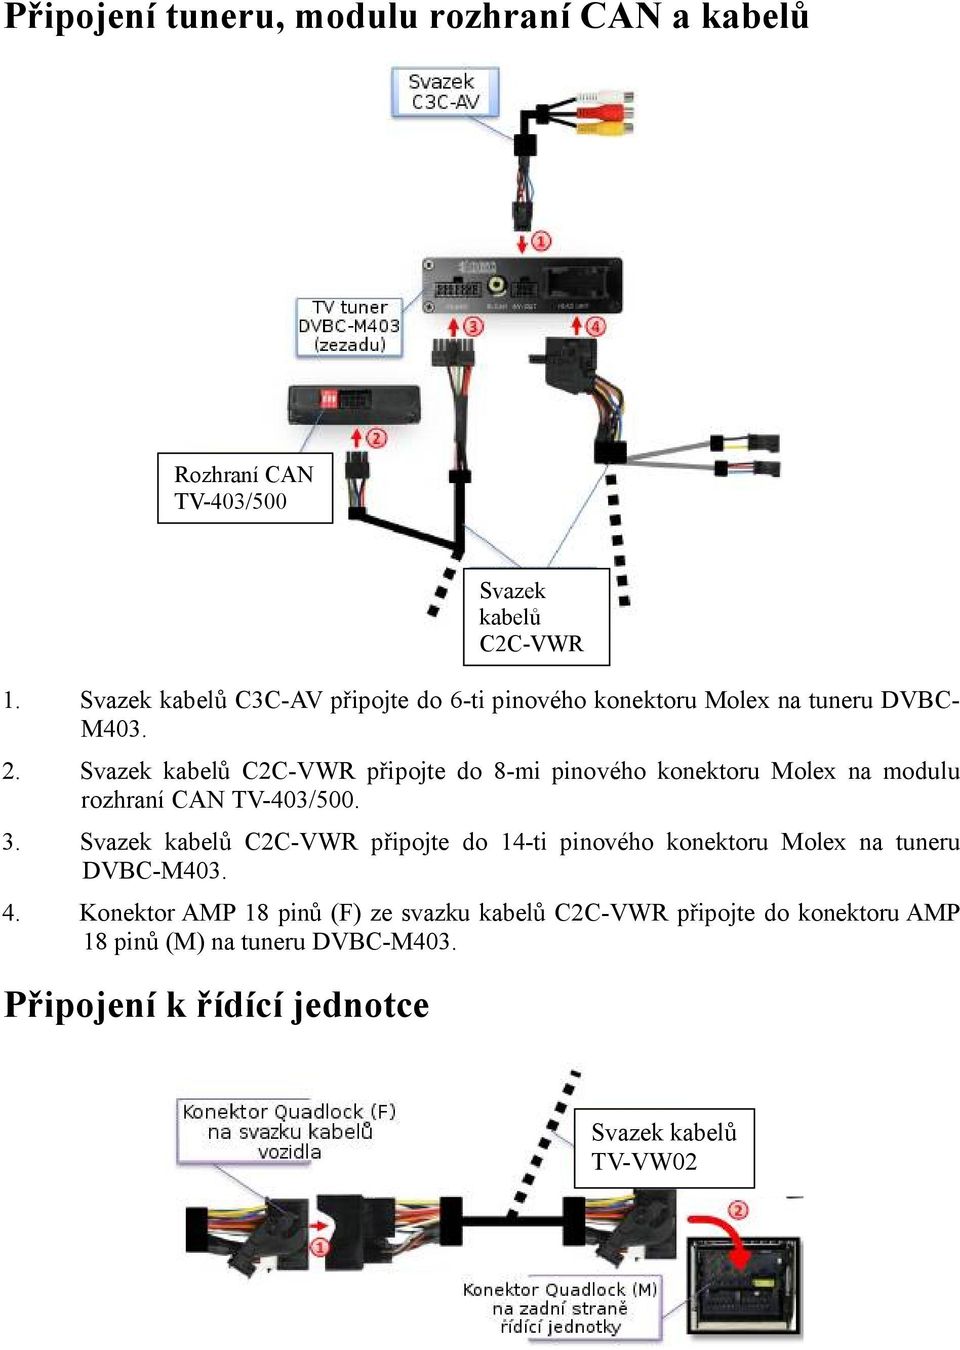 Svazek kabelů C2C-VWR připojte do 8-mi pinového konektoru Molex na modulu rozhraní CAN TV-403/500. 3.